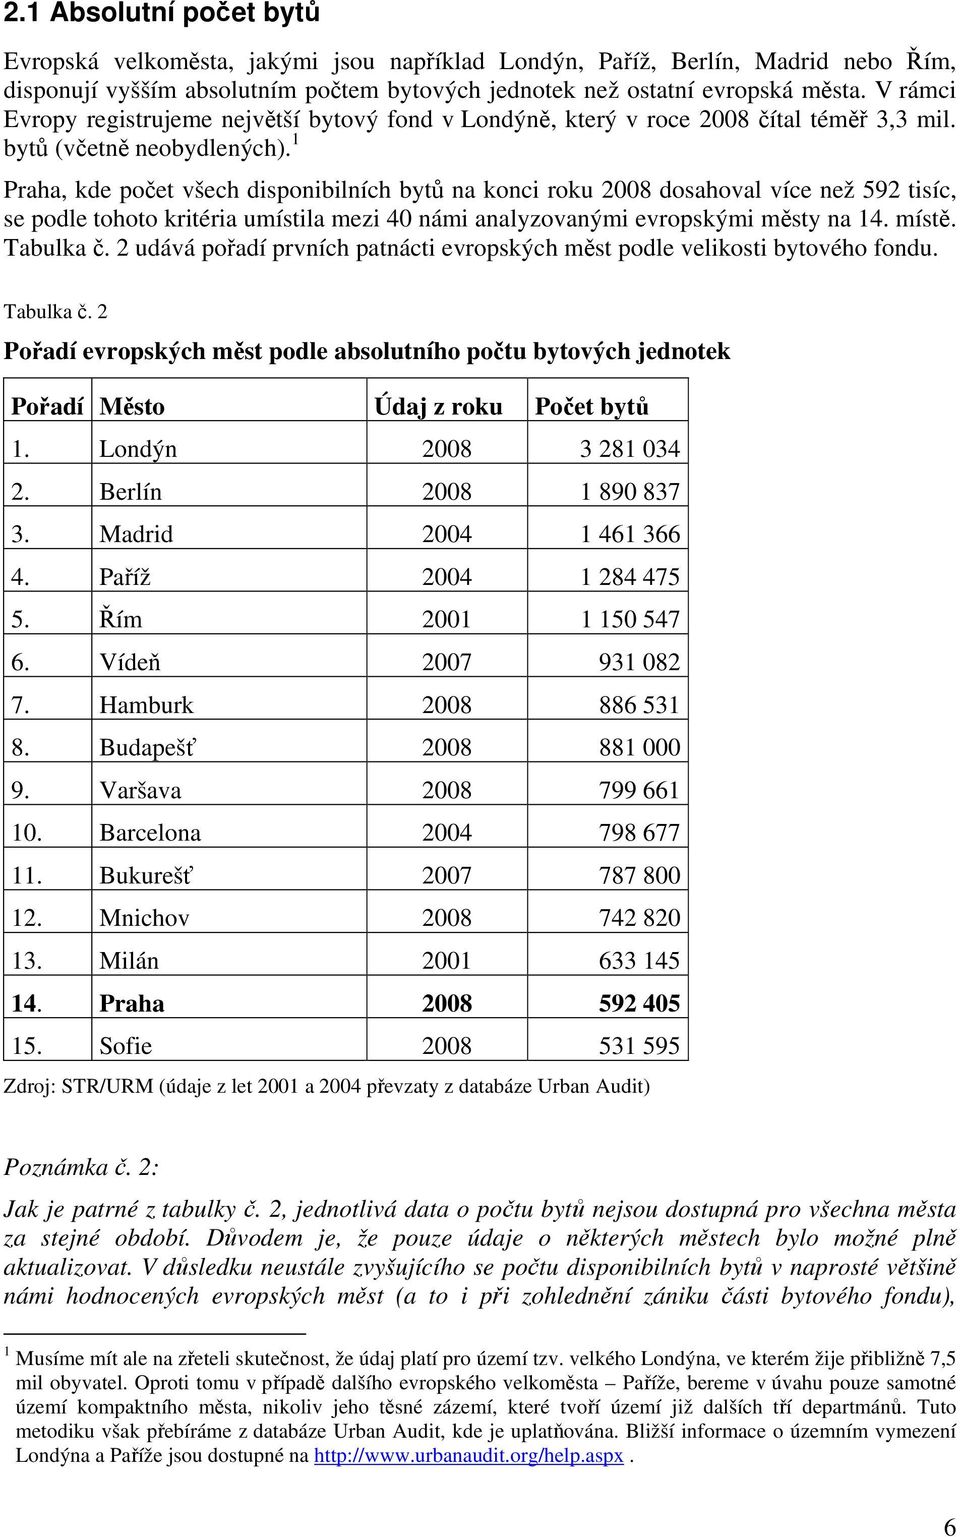 1 Praha, kde počet všech disponibilních bytů na konci roku 2008 dosahoval více než 592 tisíc, se podle tohoto kritéria umístila mezi 40 námi analyzovanými evropskými městy na 14. místě. Tabulka č.